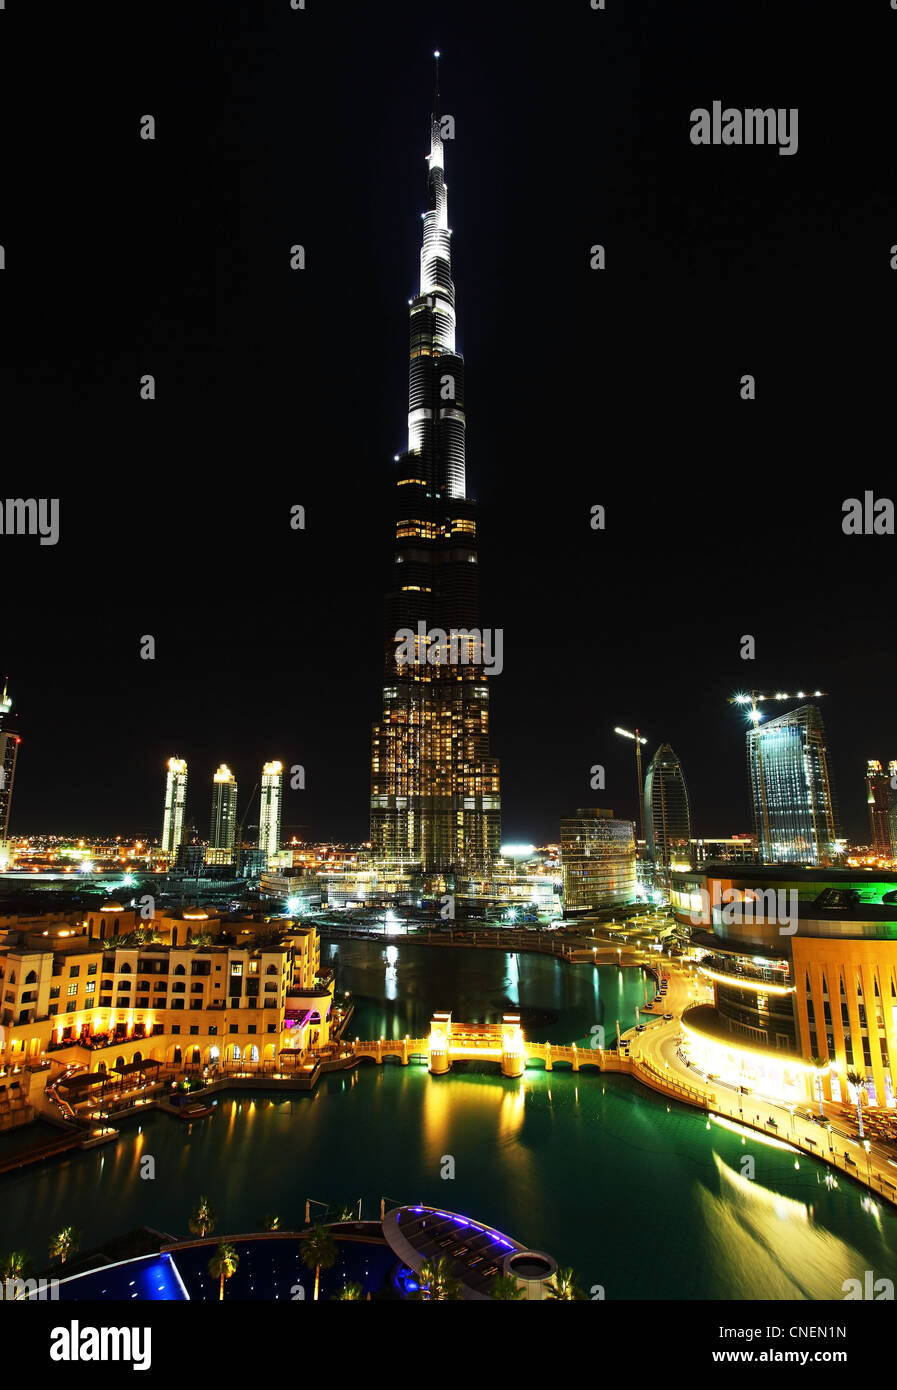 Immagine panoramica del centro cittadino di Dubai di notte Foto Stock